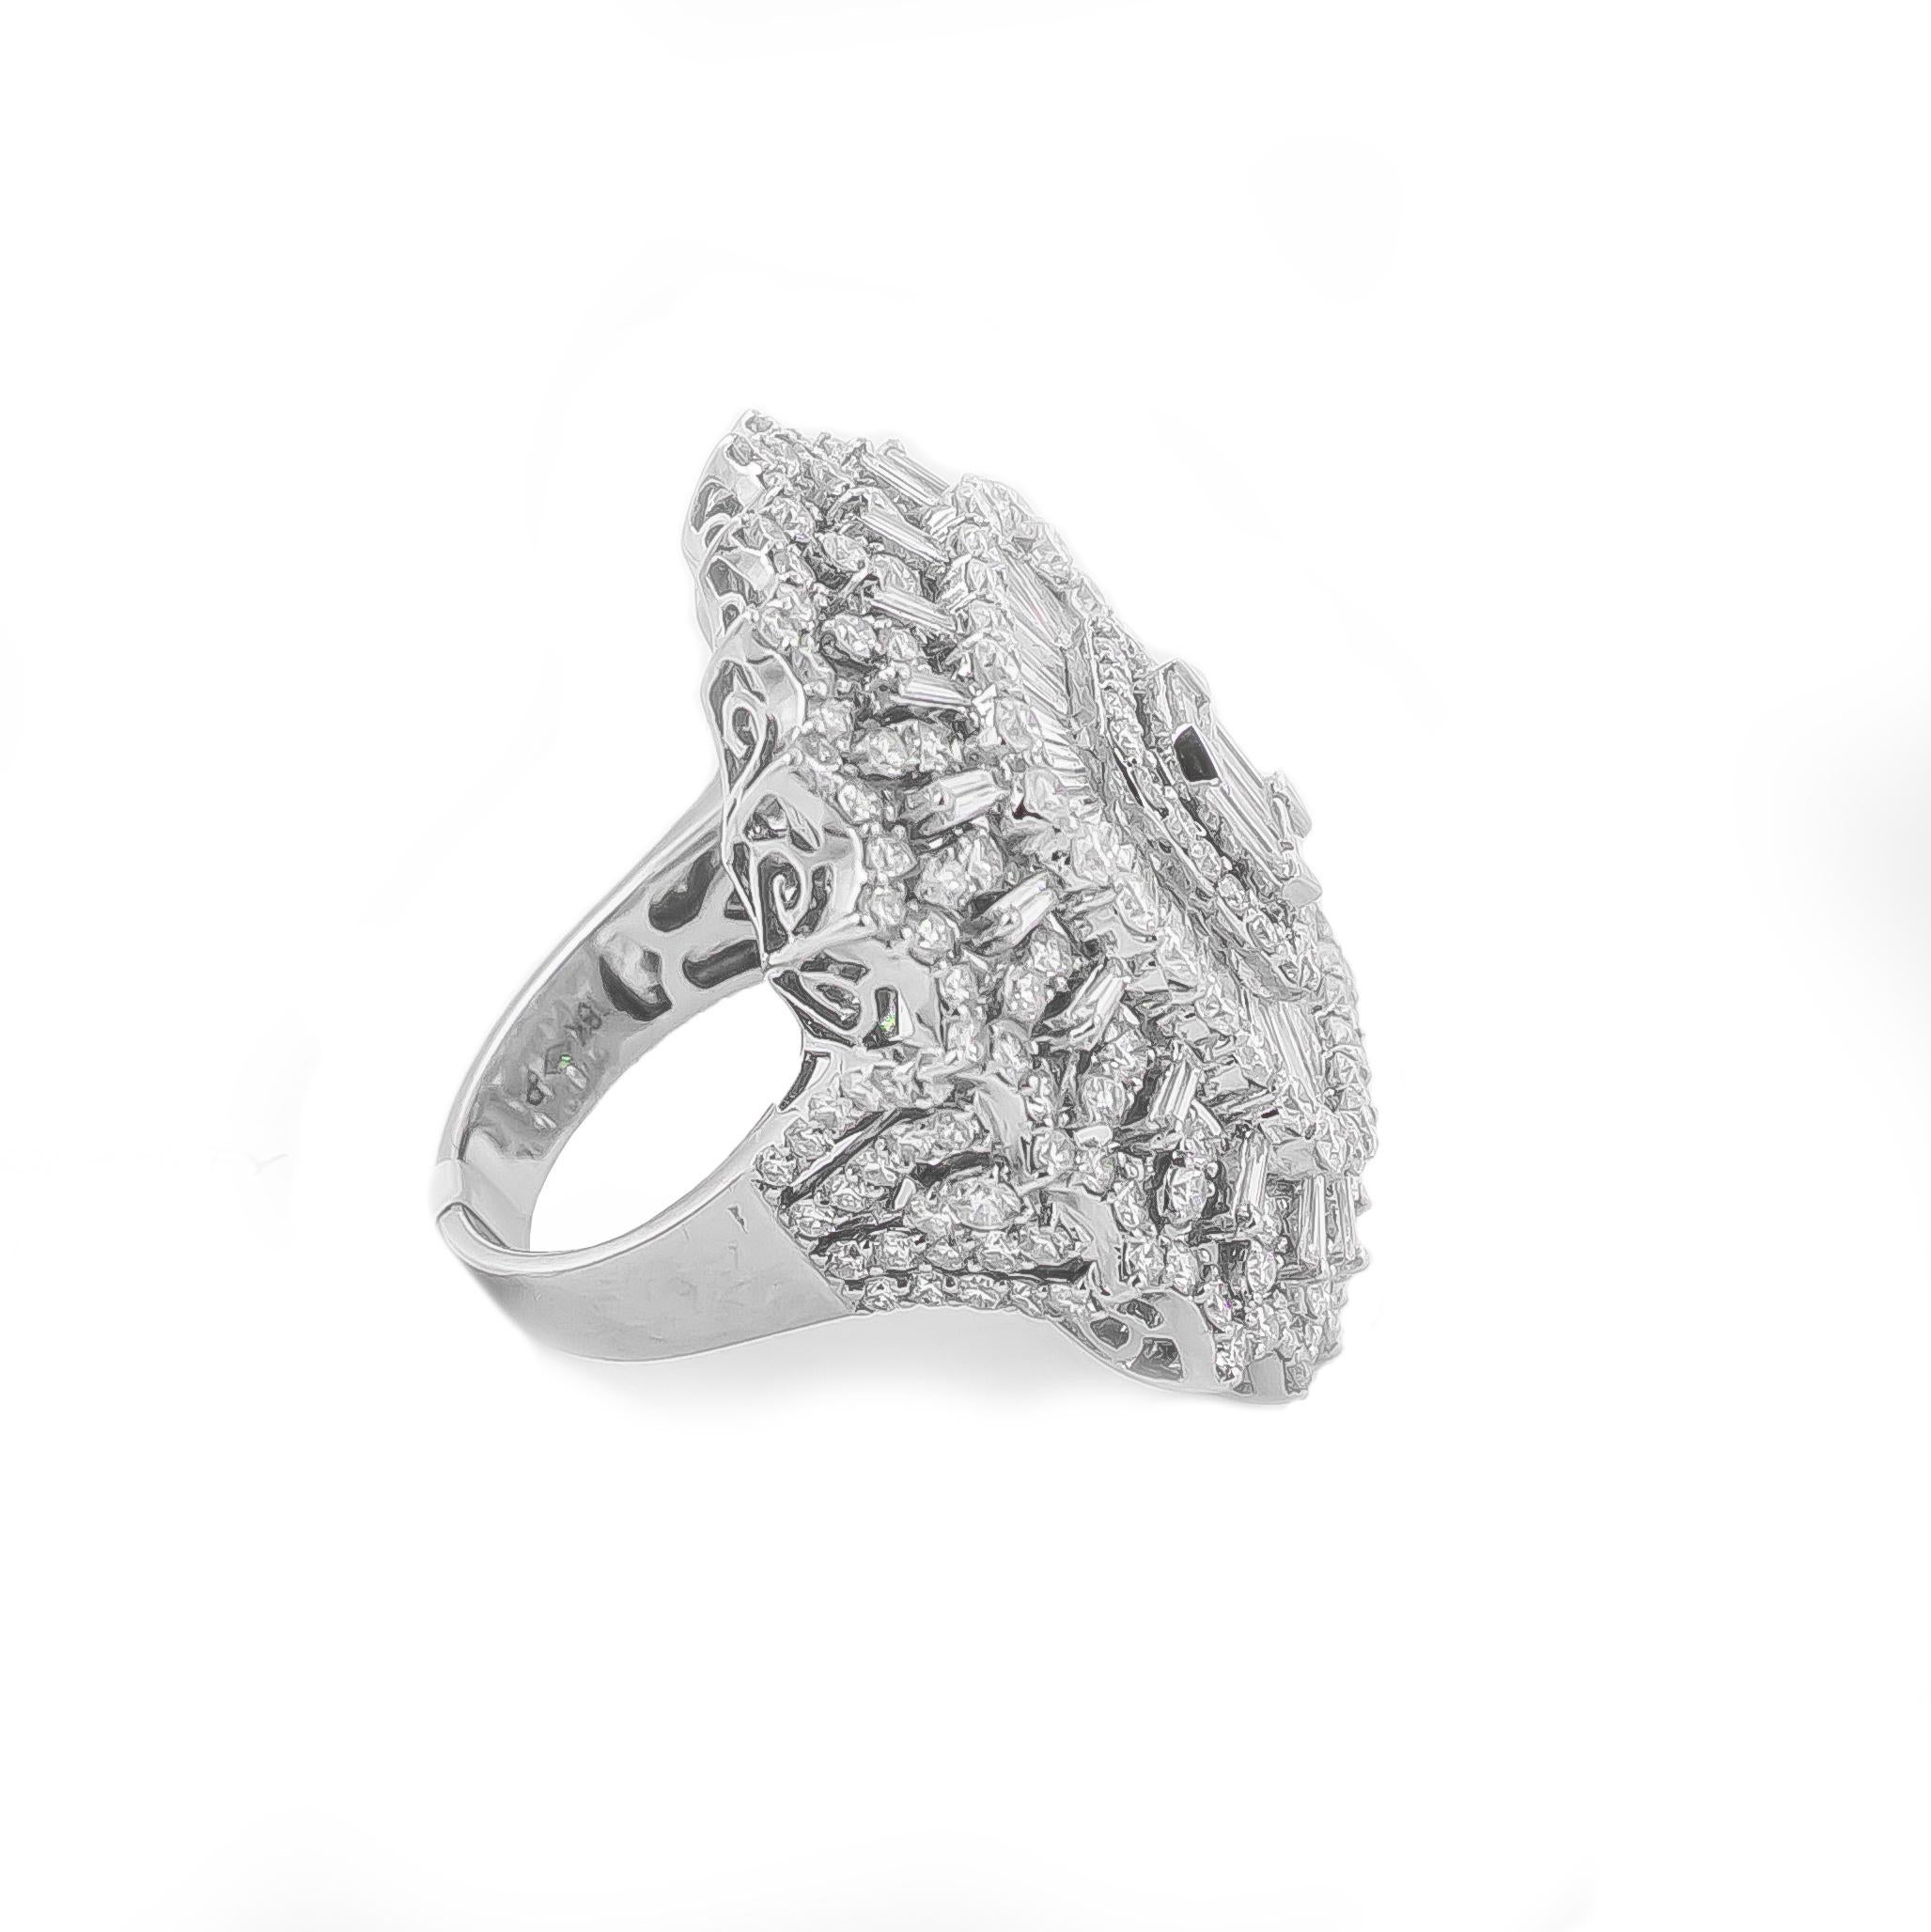 Baguette Cut Stunning Diamond Ring 7.80 Carat 18 Karat White Gold